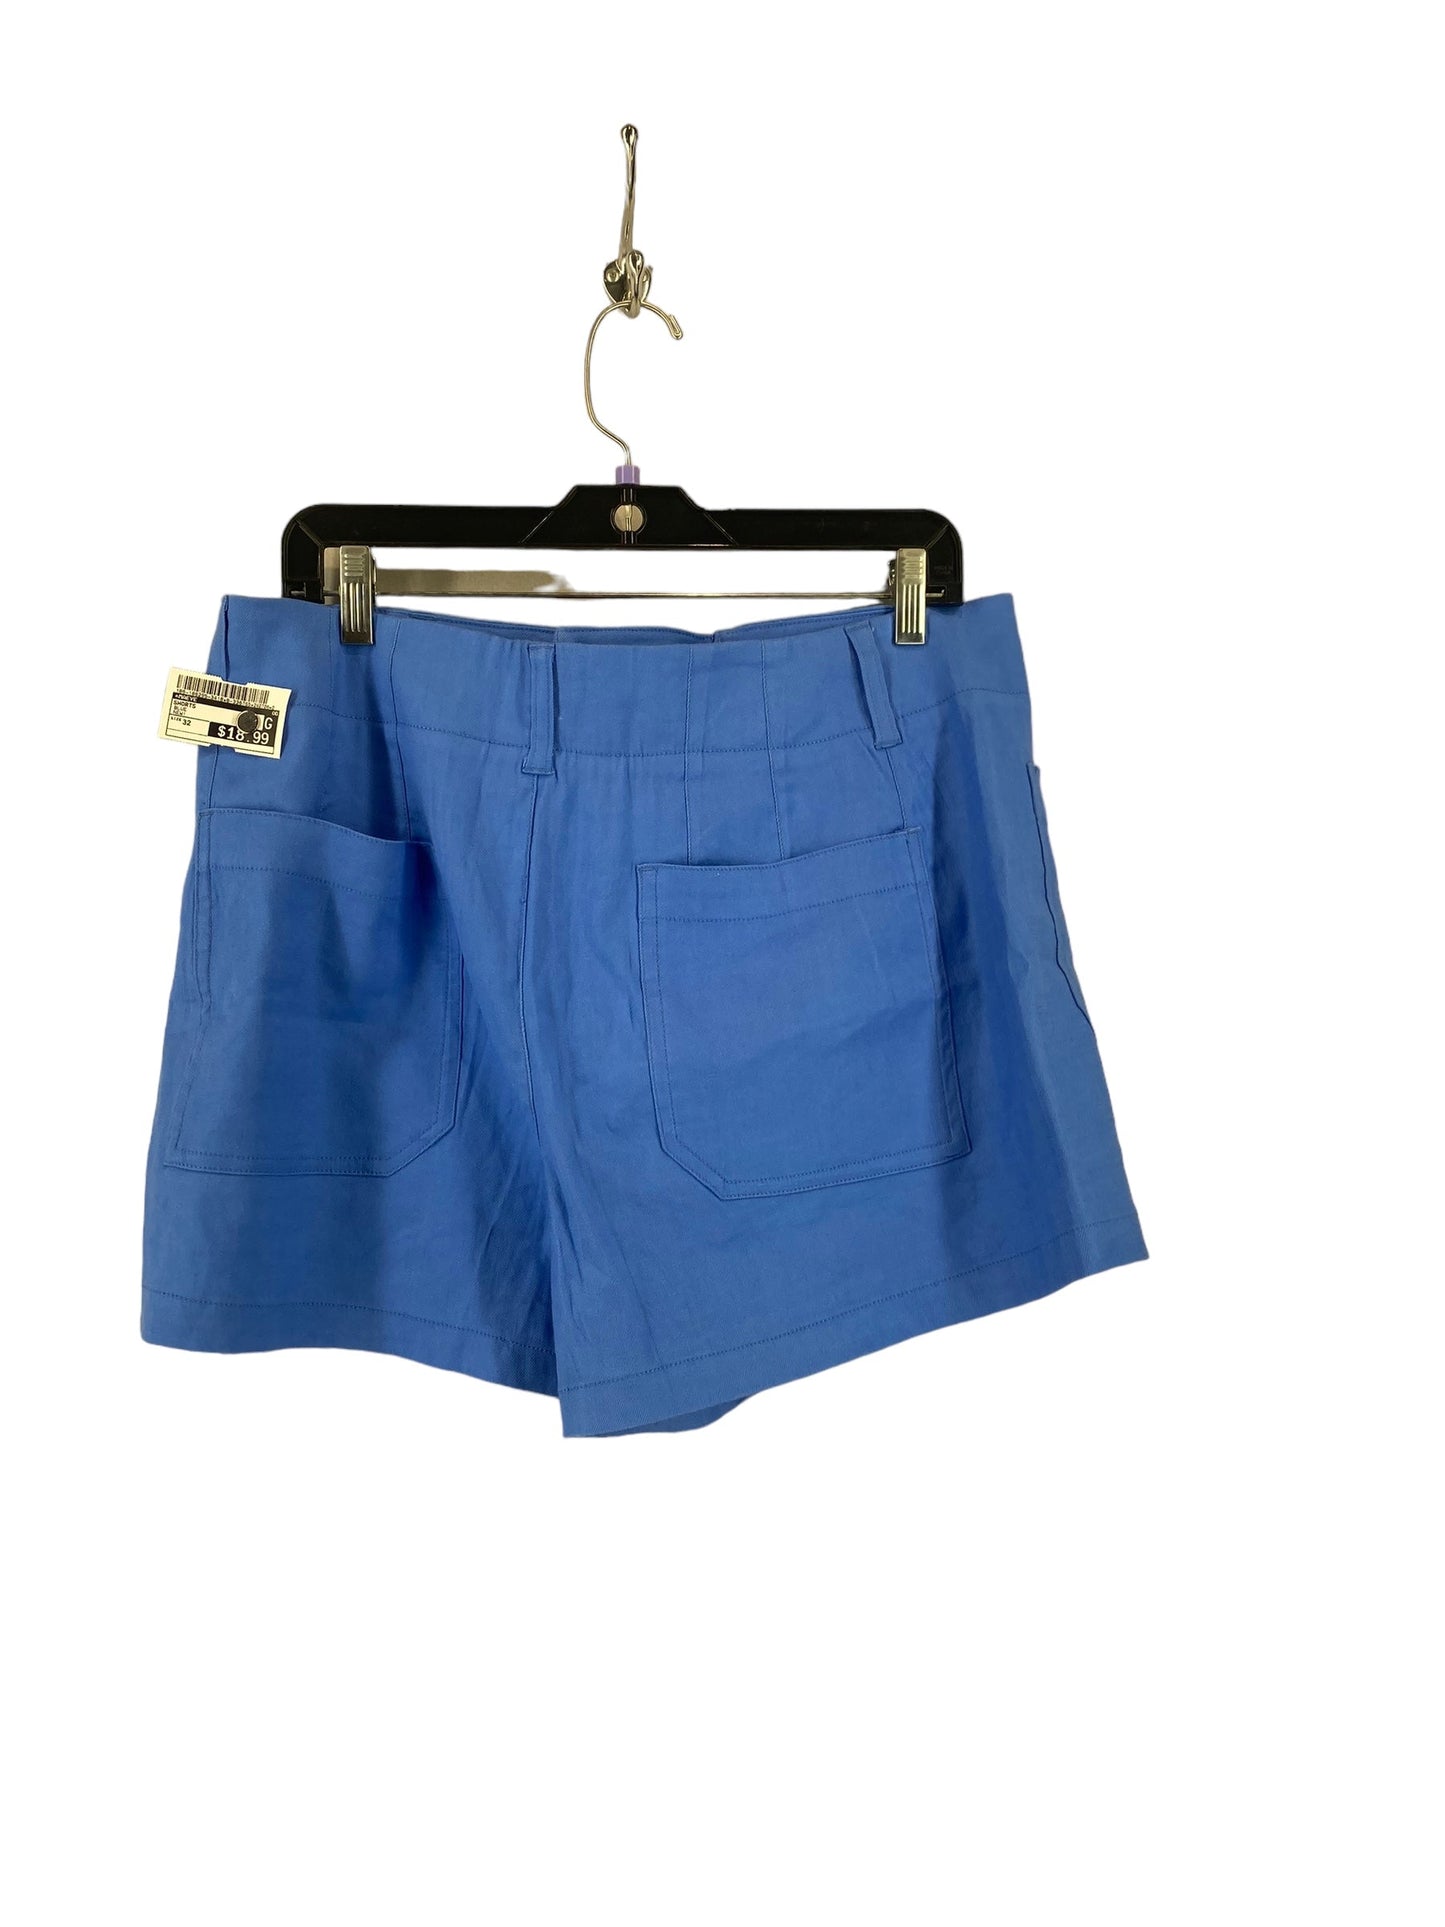 Blue Shorts Maeve, Size 32